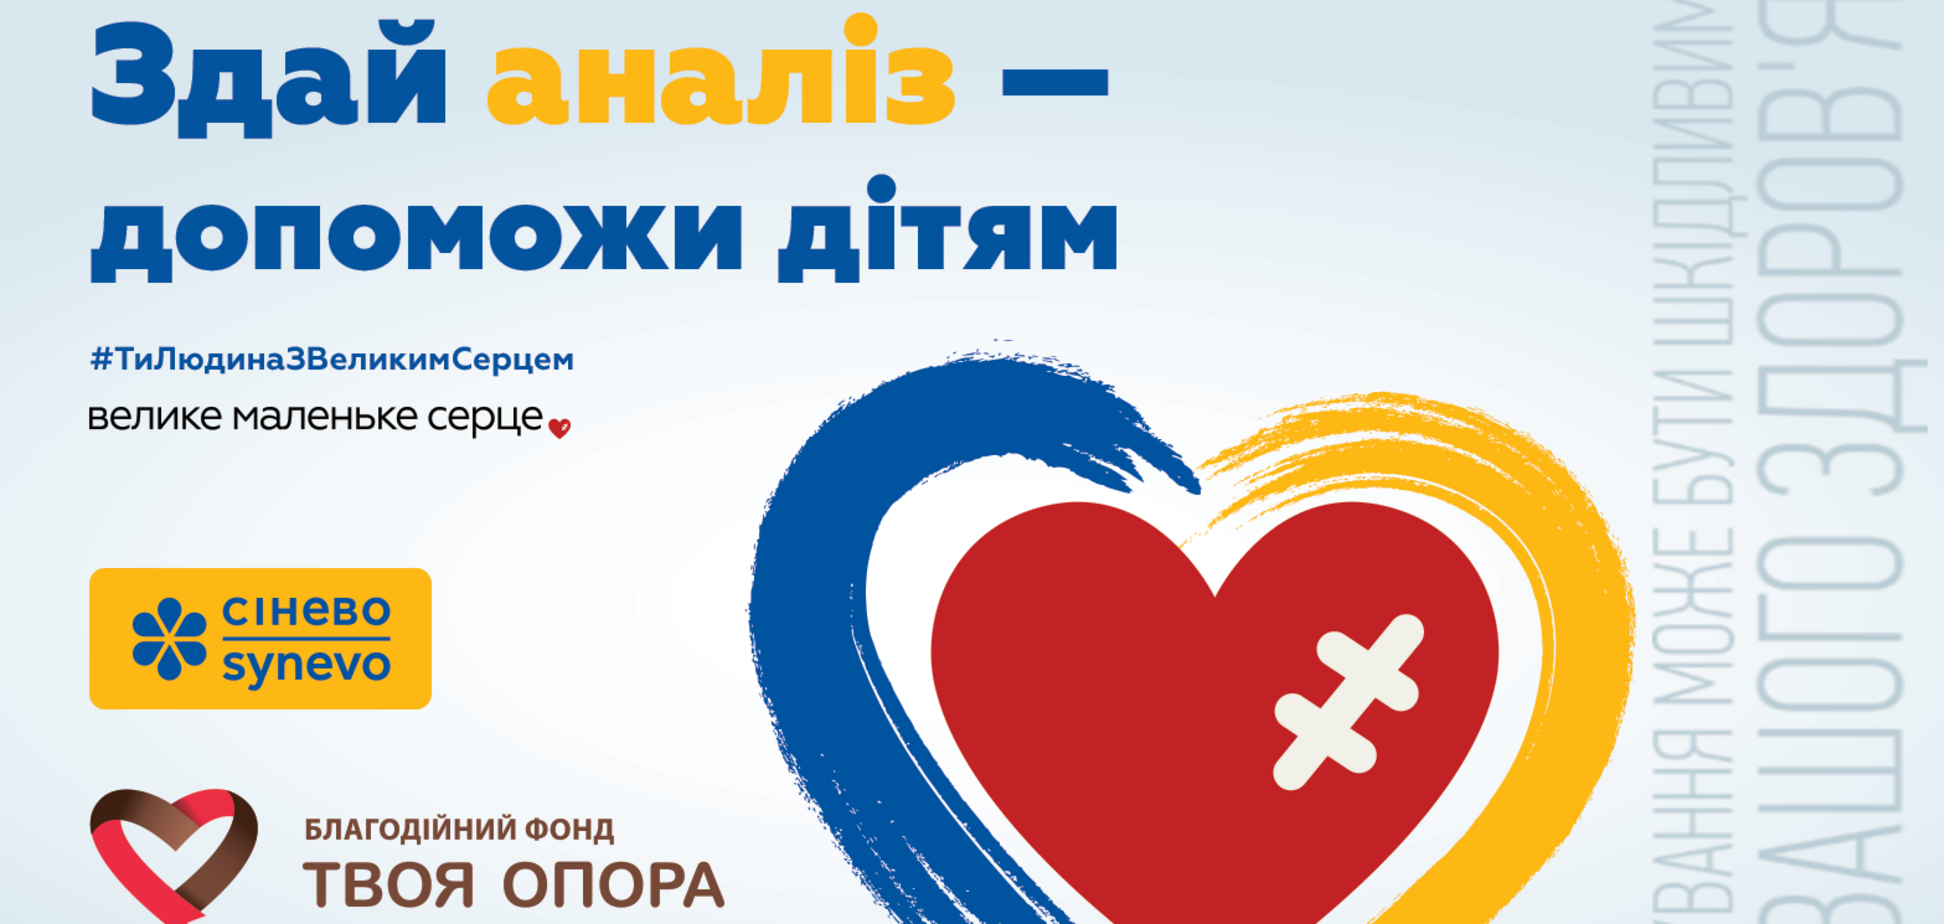 Лаборатория 'Синэво' запустила всеукраинский благотворительный проект для помощи детям с врожденными пороками сердца